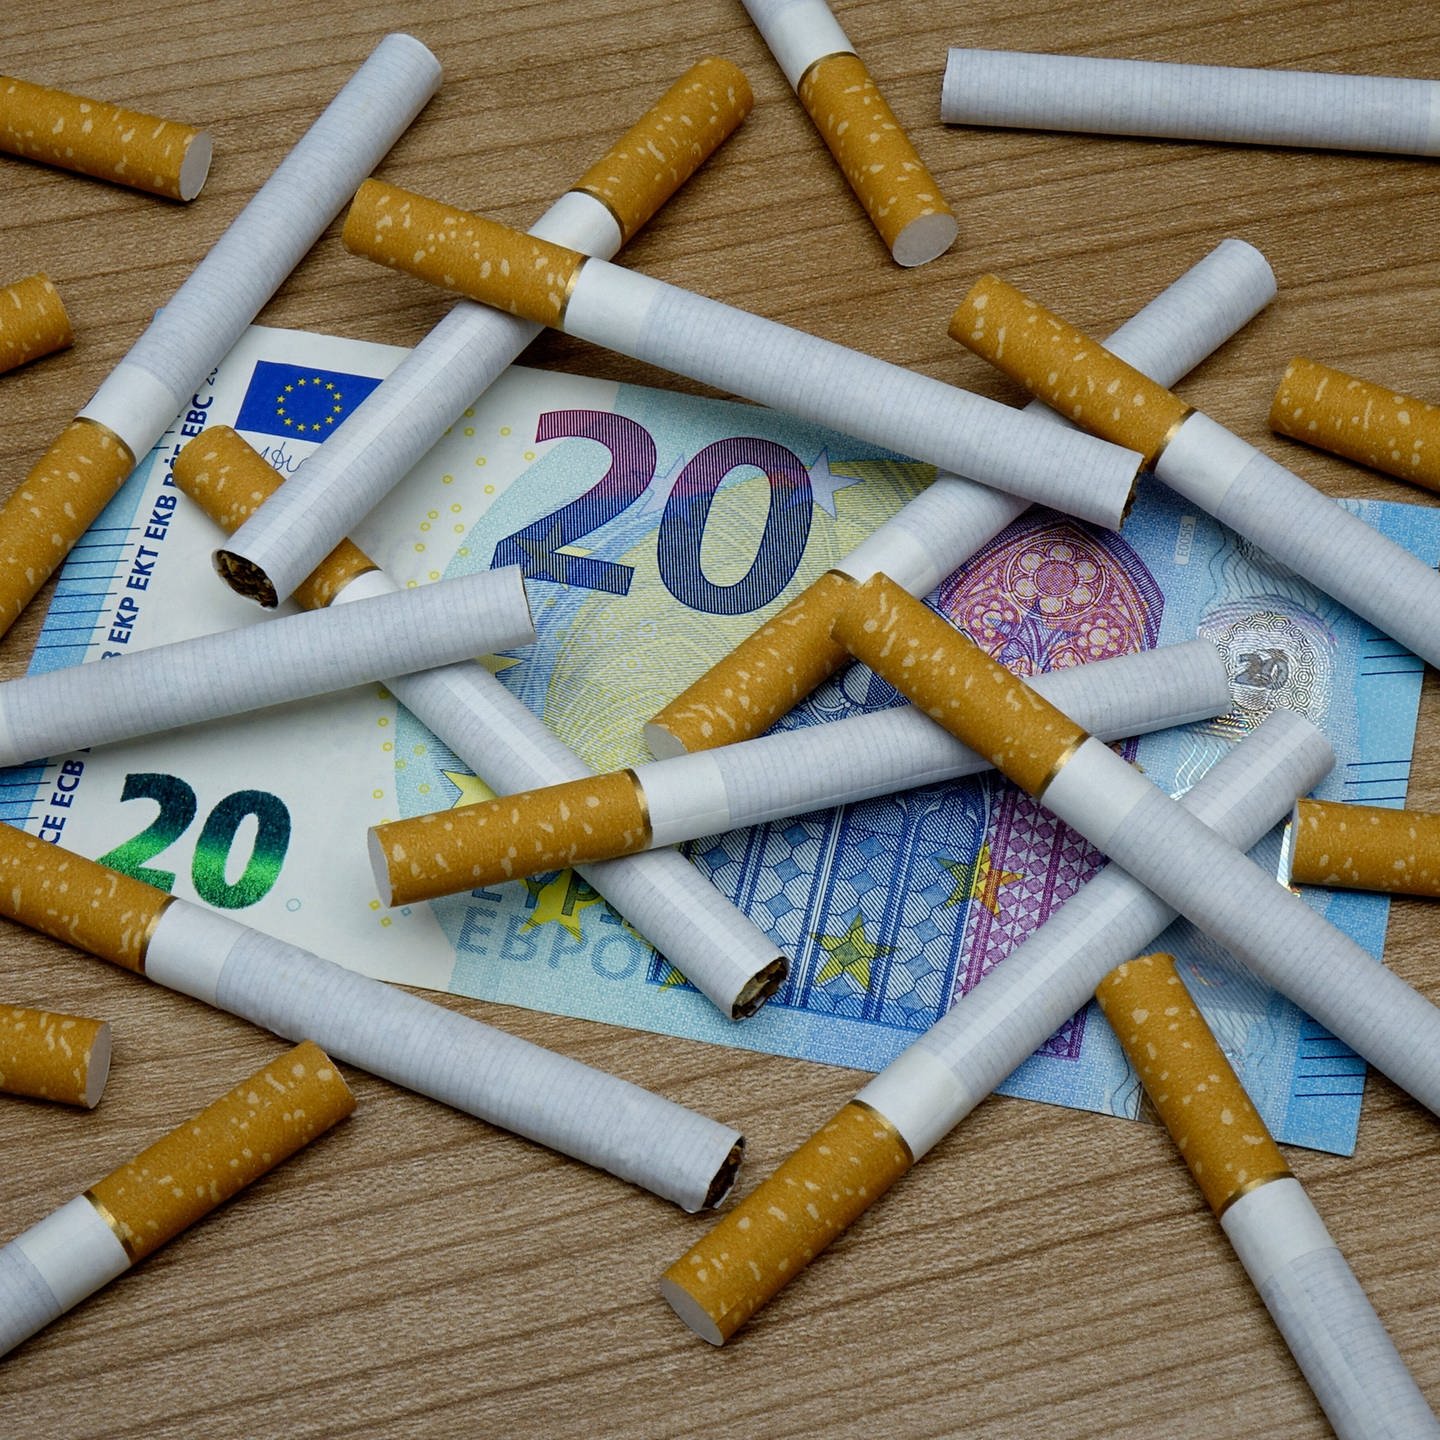 25 Euro für eine Packung Zigaretten!